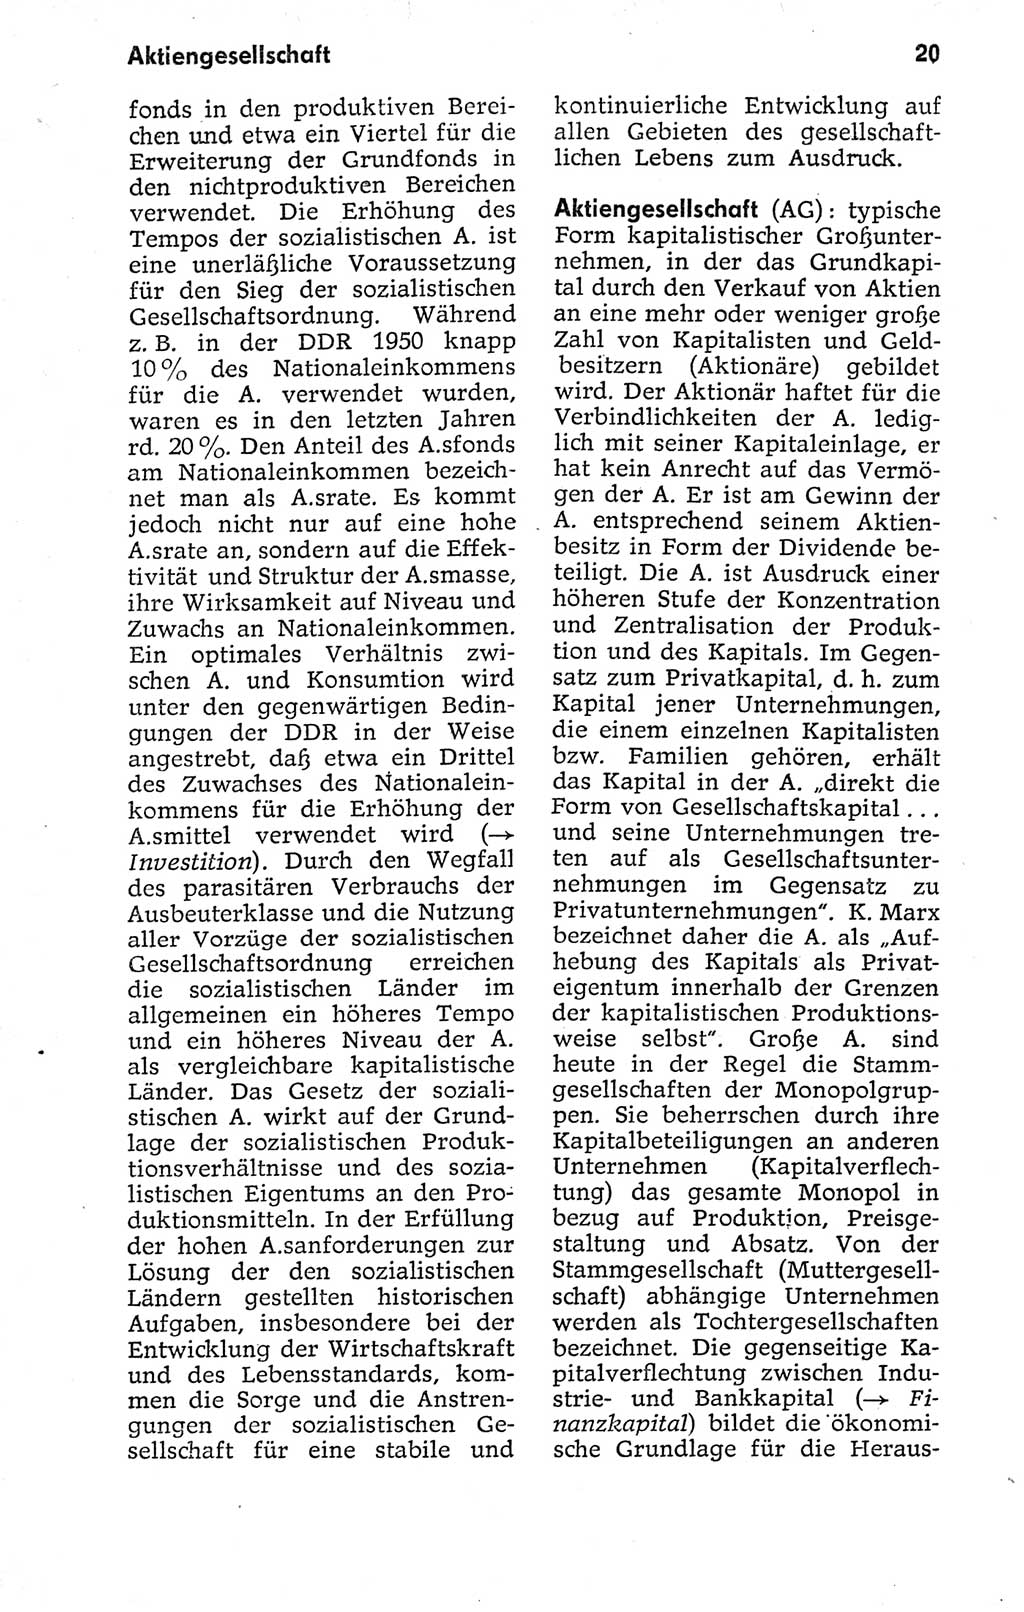 Kleines politisches Wörterbuch [Deutsche Demokratische Republik (DDR)] 1973, Seite 20 (Kl. pol. Wb. DDR 1973, S. 20)